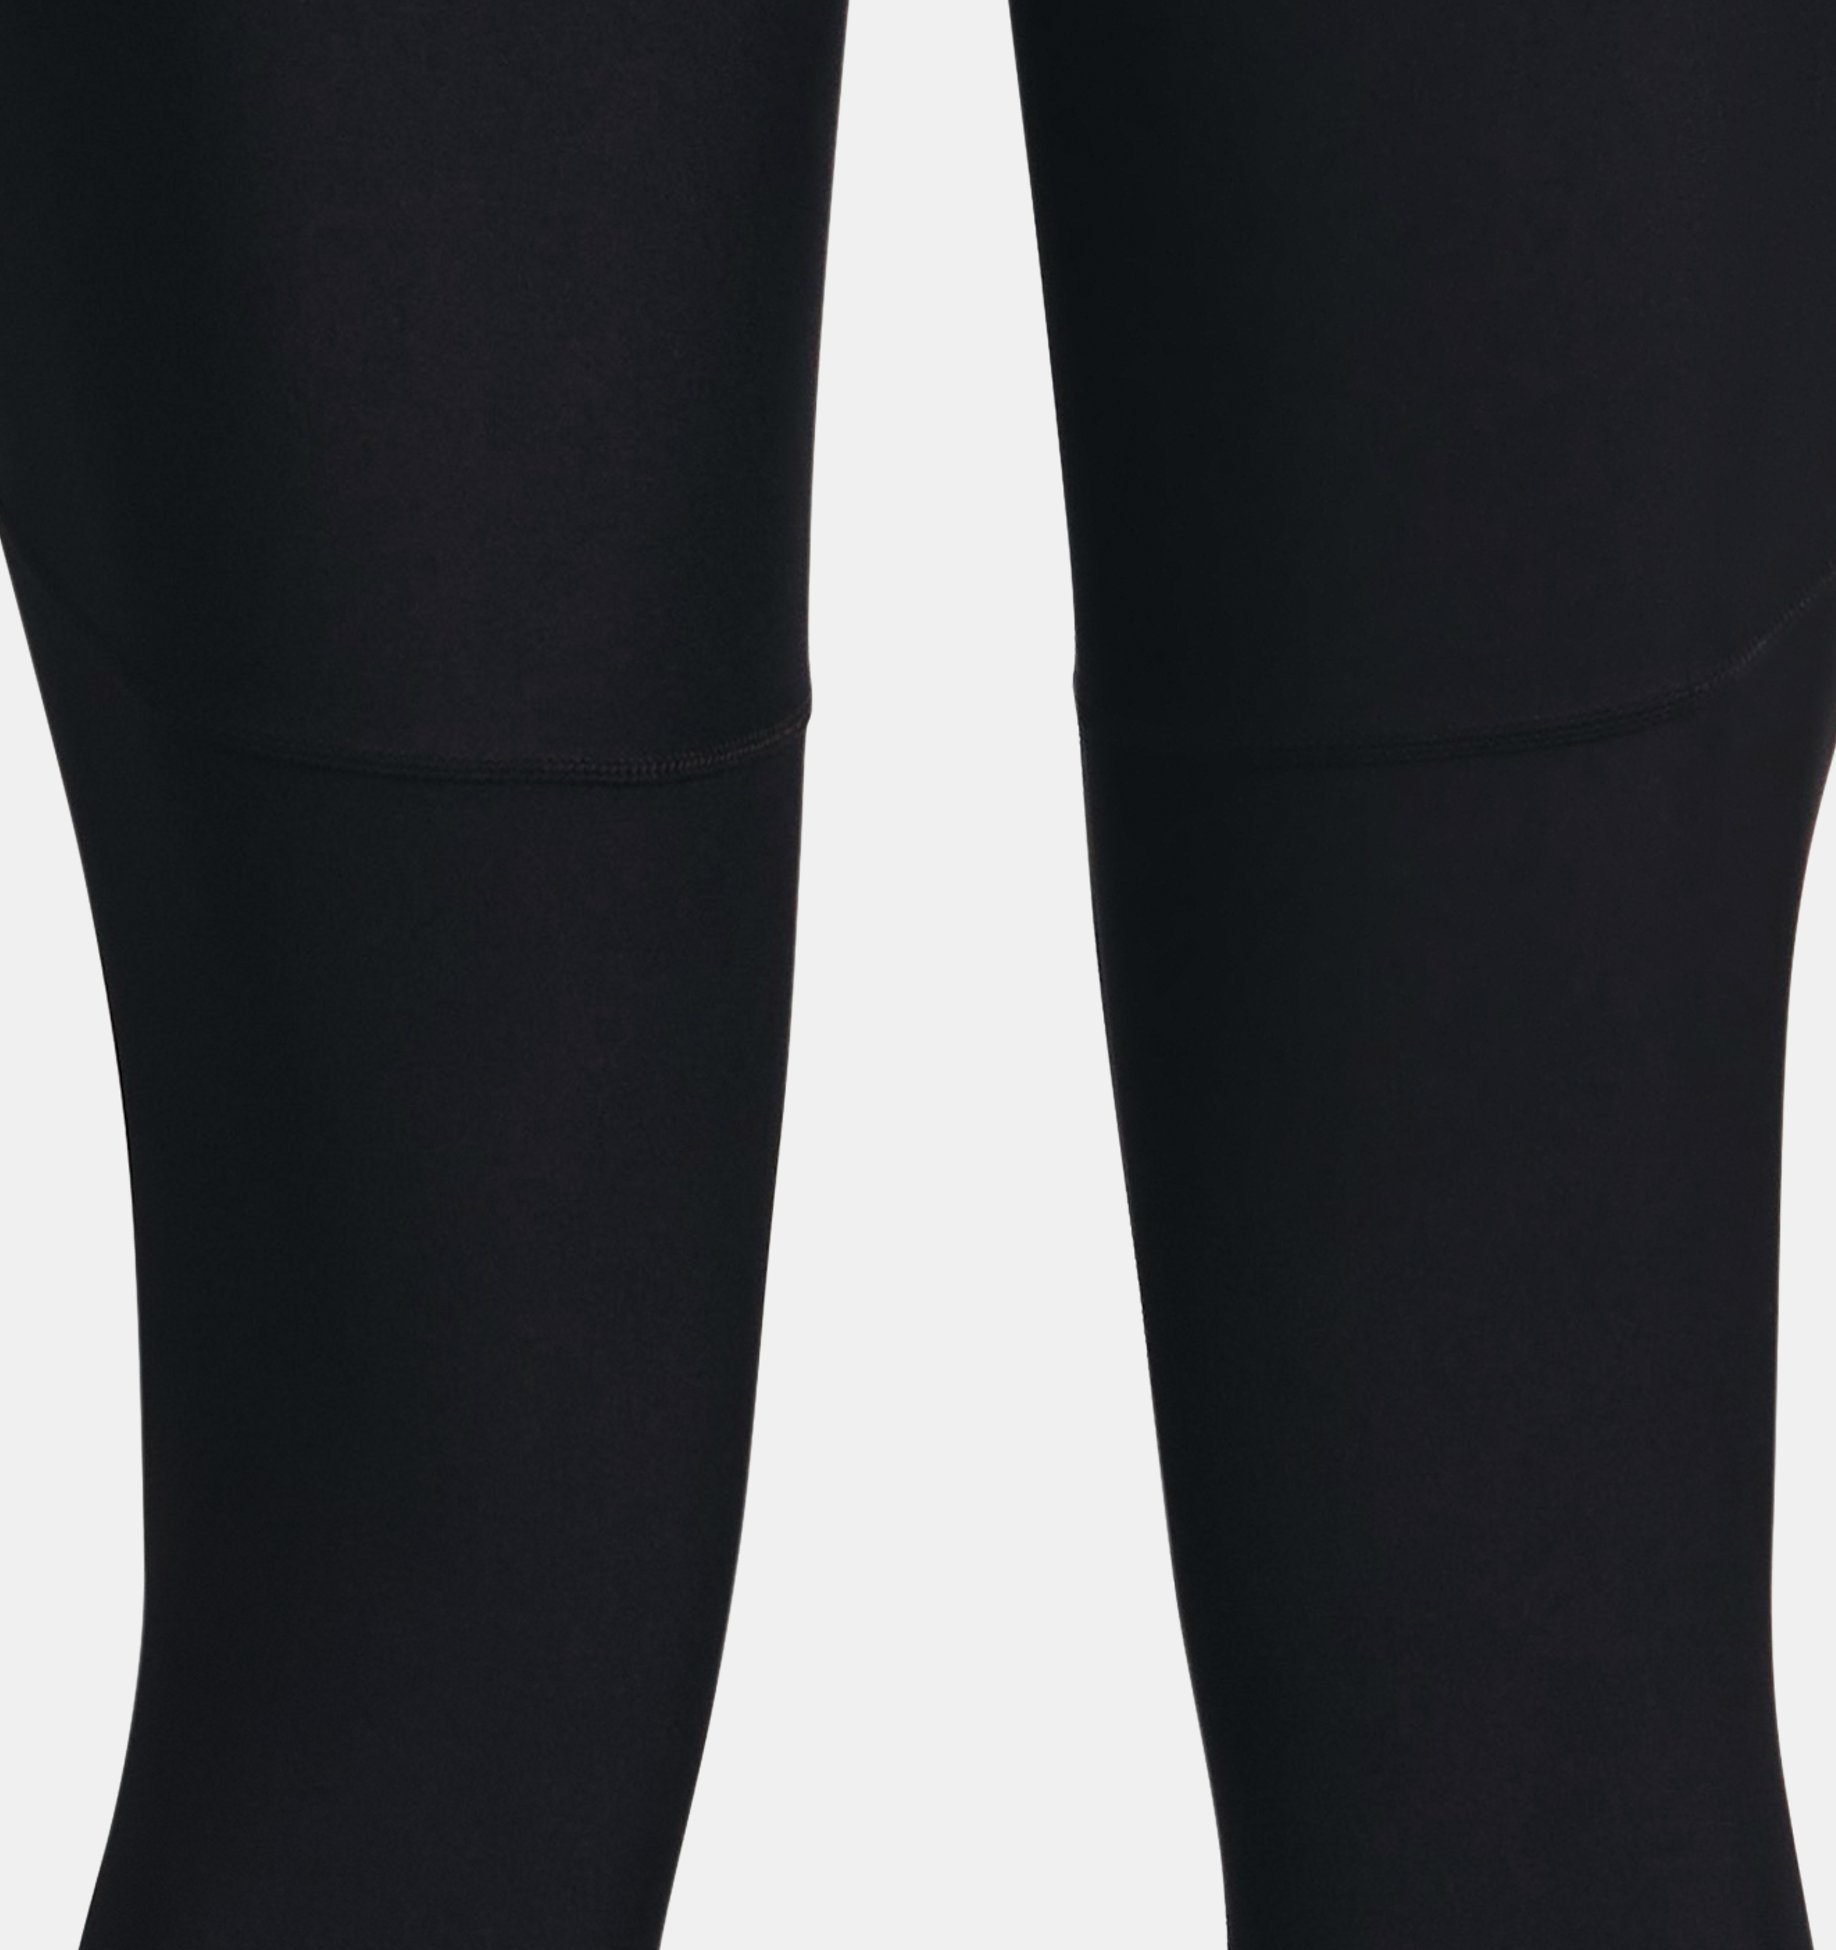 Women's HeatGear® Full-Length Leggings | Under Armour